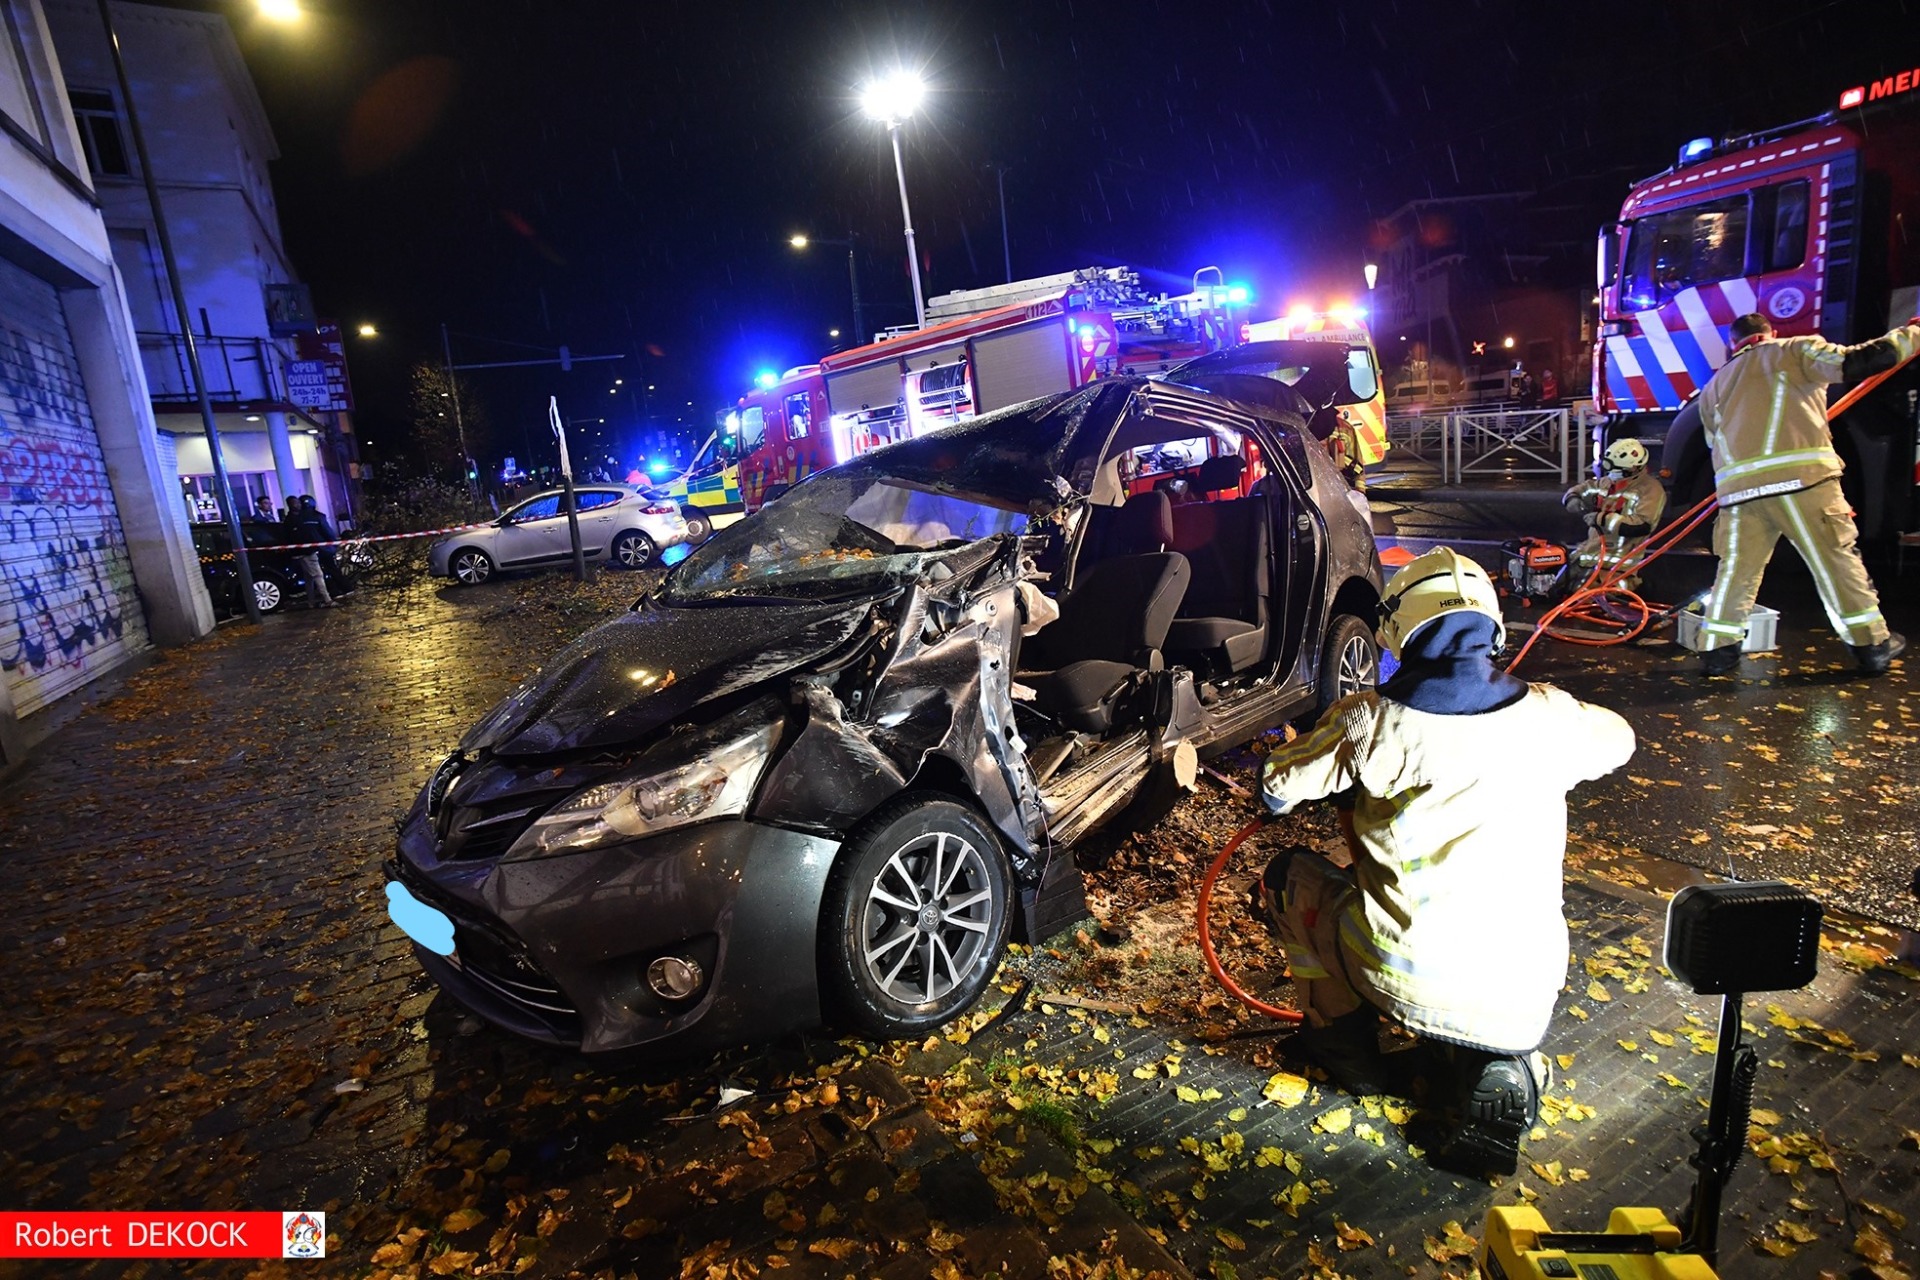  Un automobiliste désincarcéré après un accident à Bruxelles (15-09-2021 + photos) Whats187